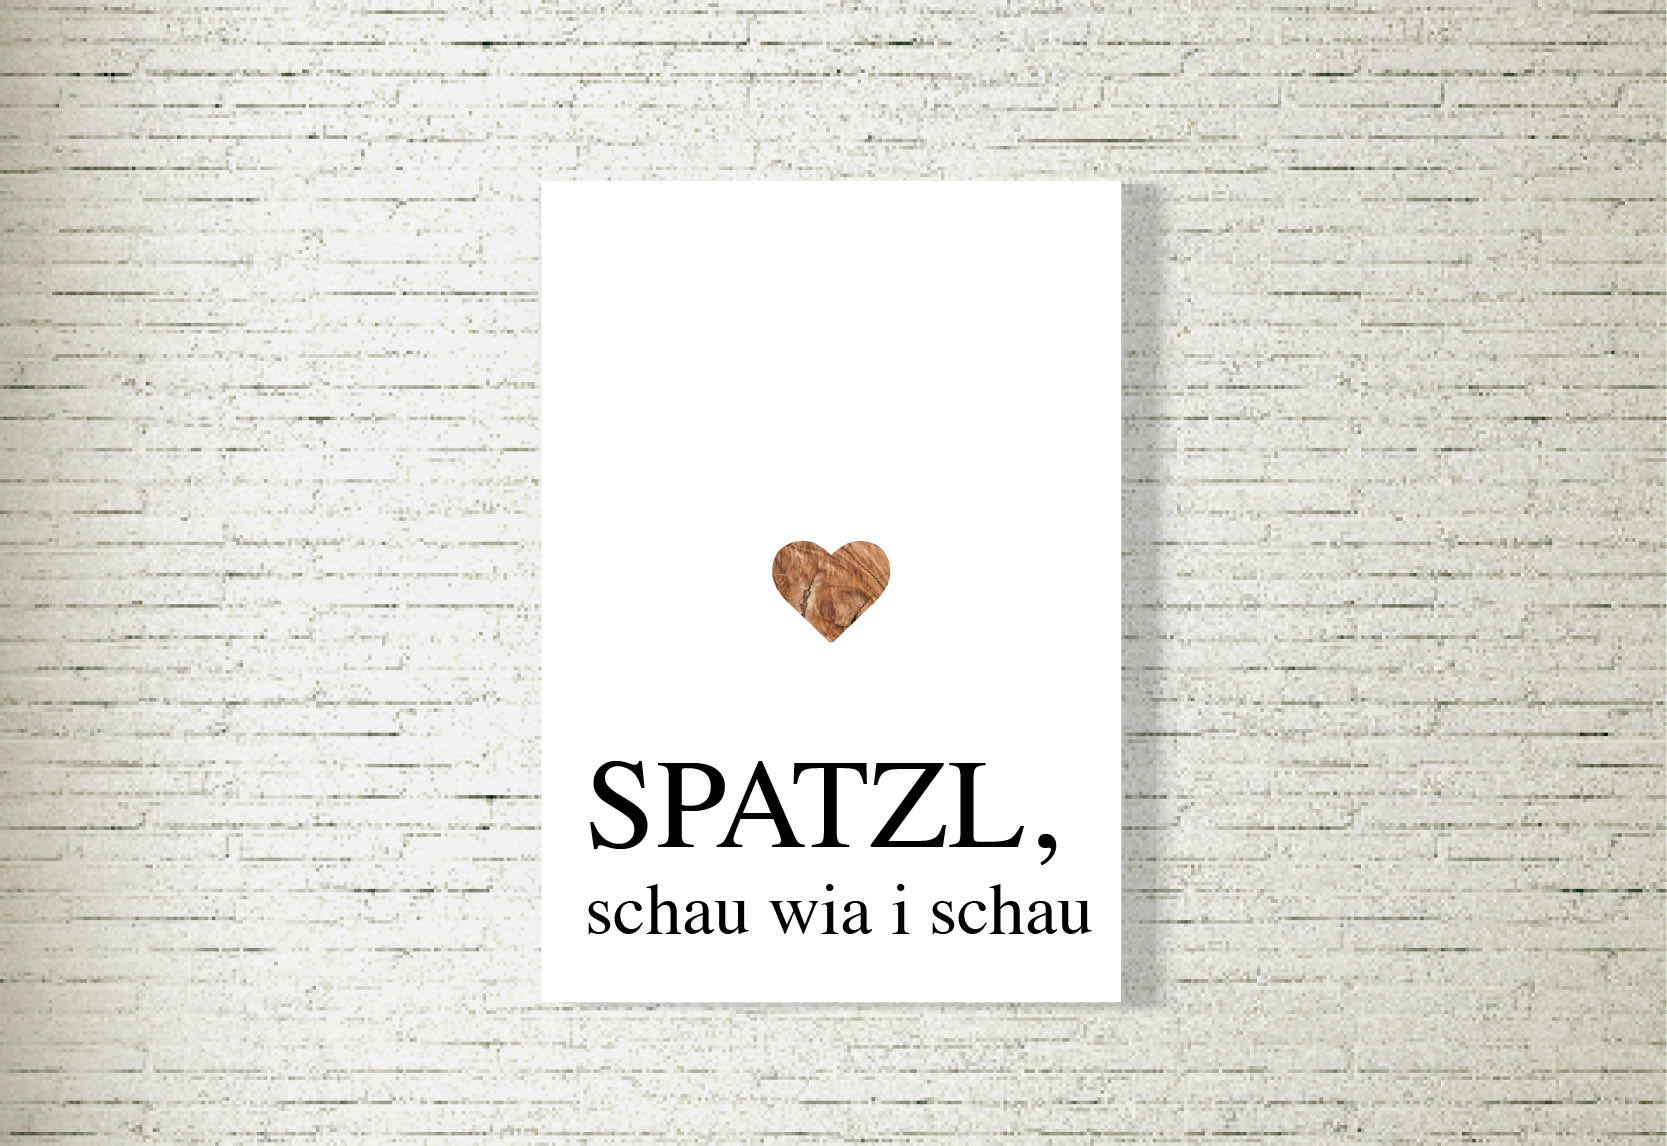 kartlerei poster shop bilder drucken bayrischer spruch bayrisch23 - Poster/Bild Spatzl schau wia i schau